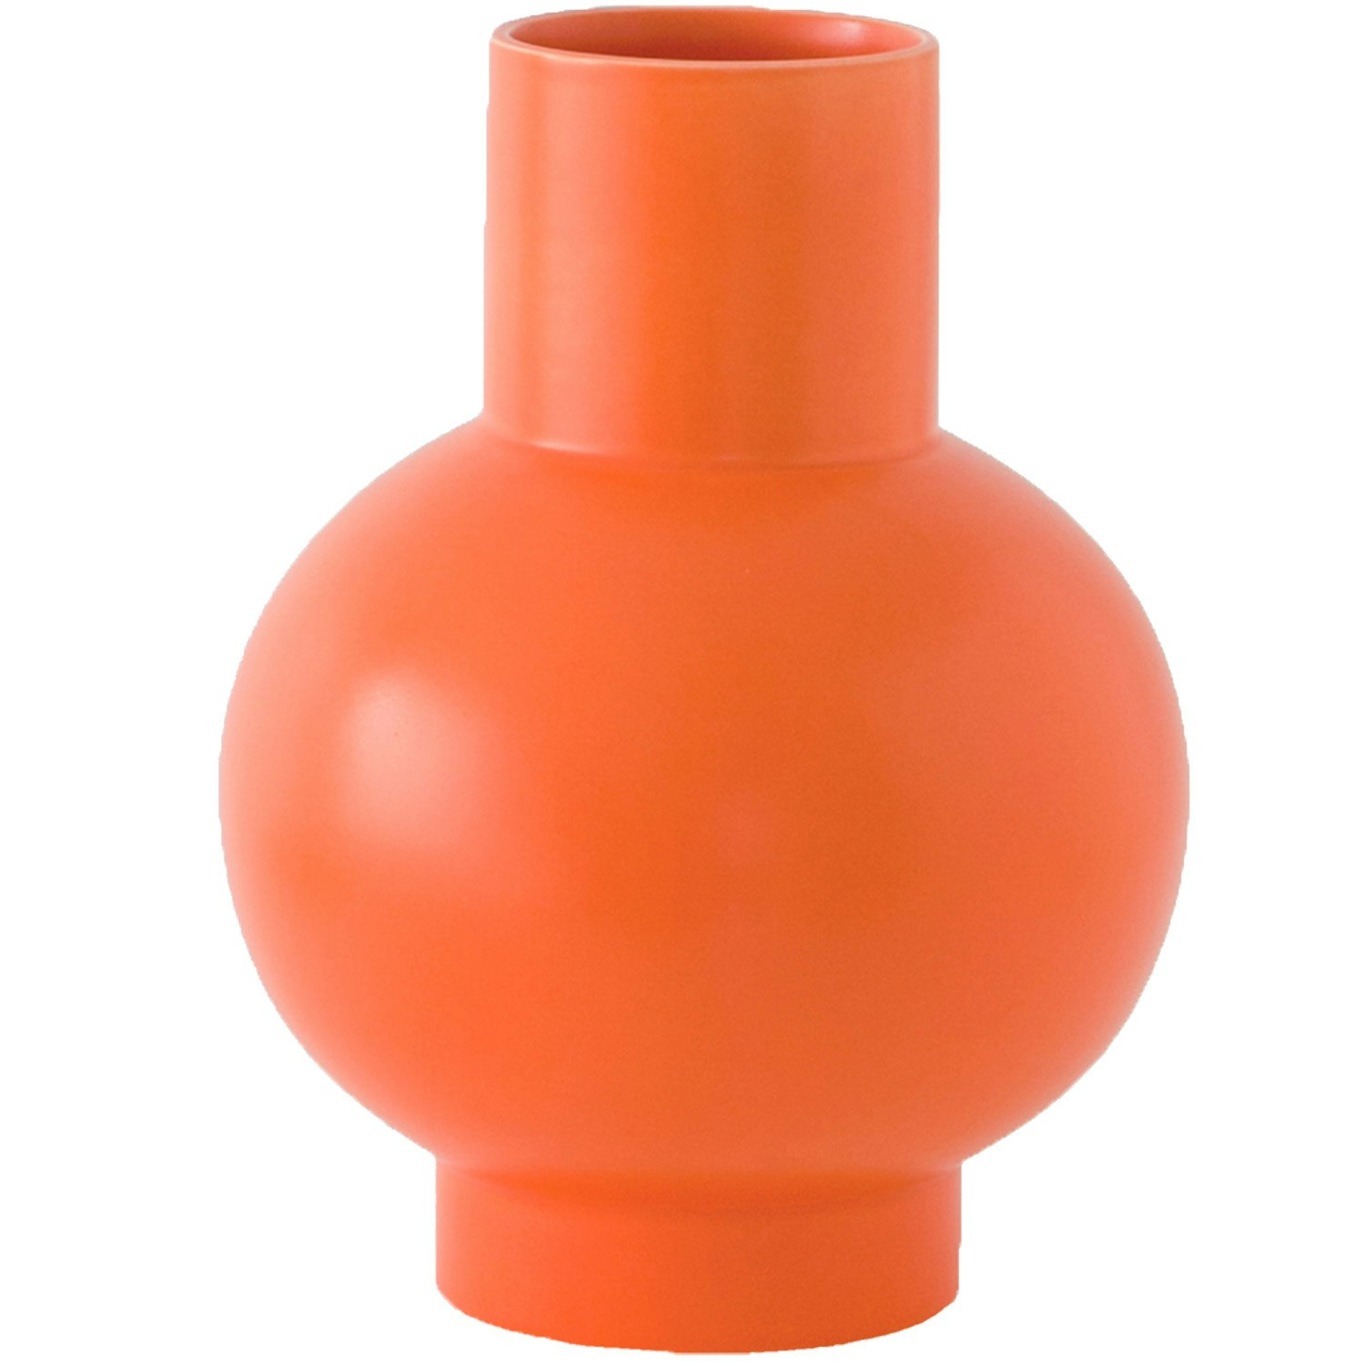 Strøm Vase 16 cm, Vibrant Orange